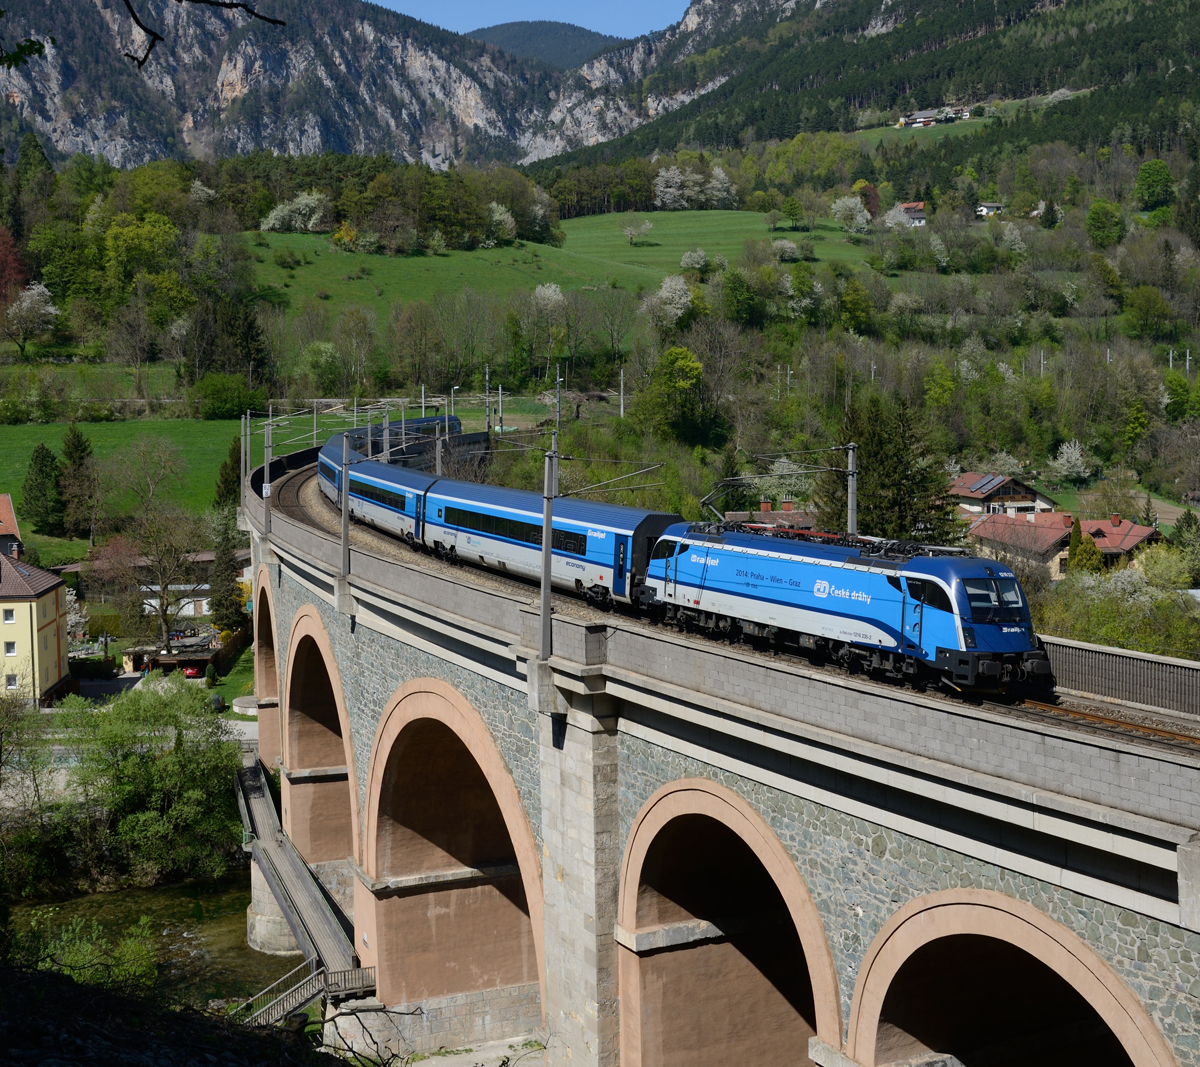 Der RJ 75  Franz Schubert  von Prag nach Praha hl.n. nach Graz Hauptbahnhof wurde am 19.April 2018 aus einer reinrassigen blauen Garnitur gebildet (Tfz 1216 235) und wurde von mir auf dem 25 Meter hohen und 276 Meter langen Schwarza-Viadukt in Payerbach fotografiert.